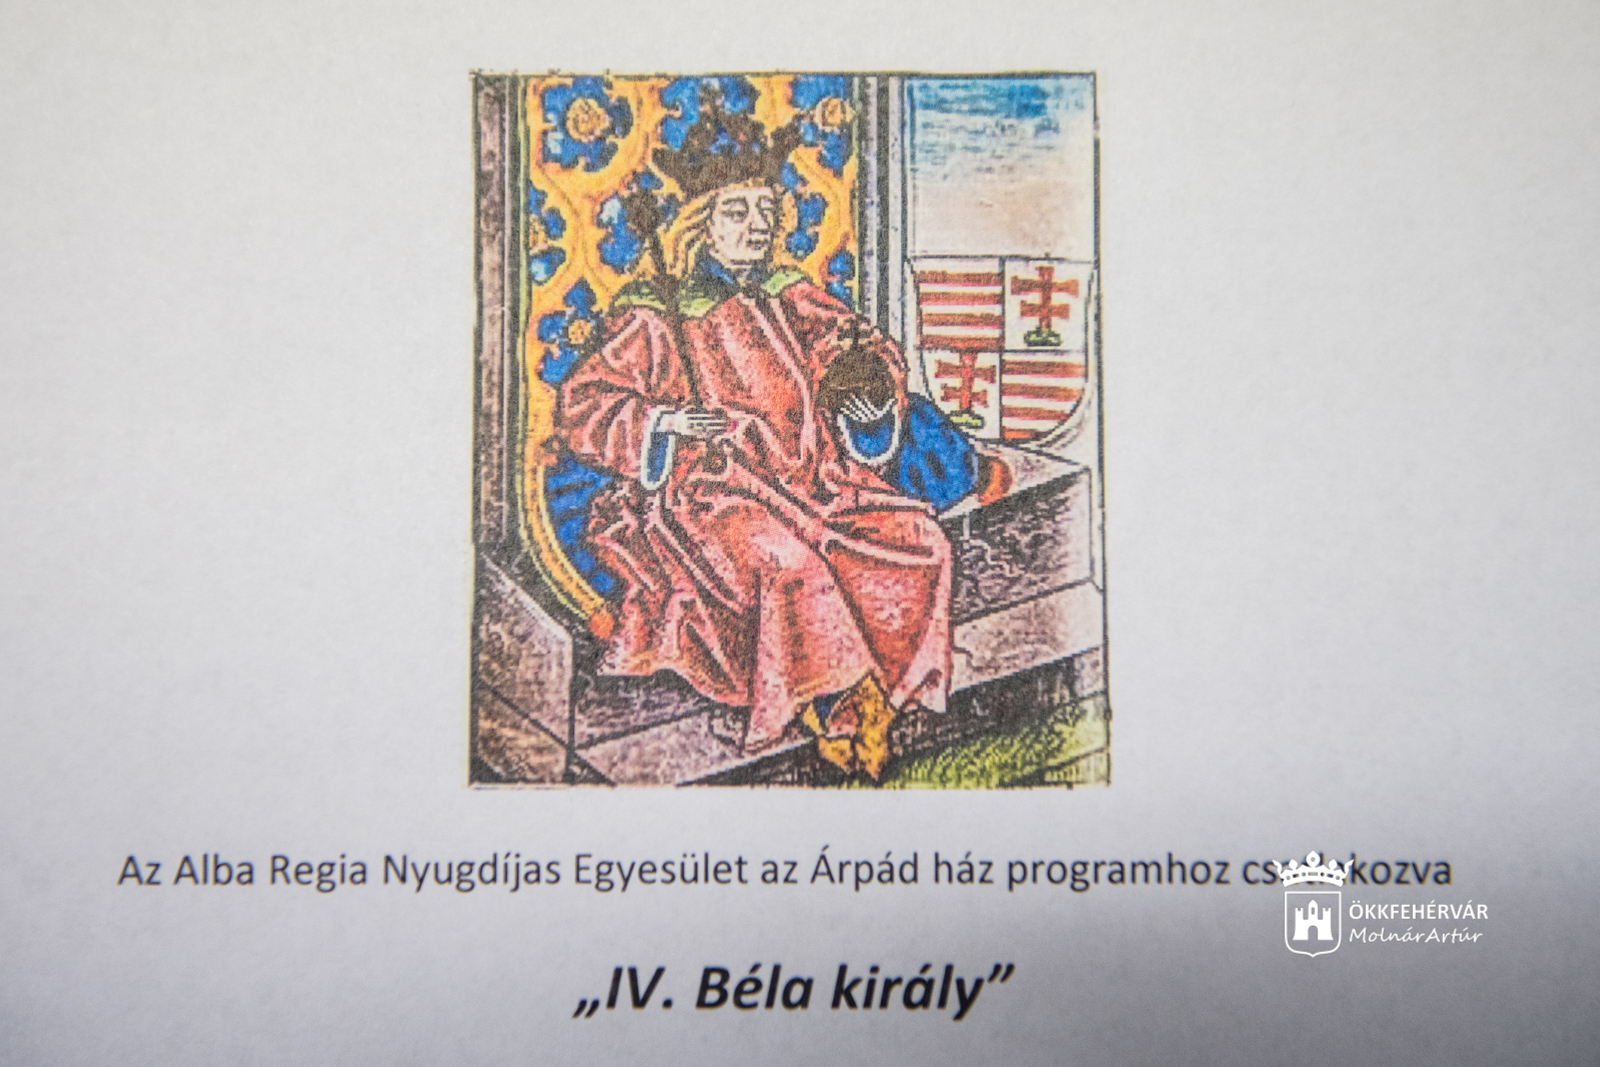 IV. Béla király címmel hirdetnek szellemi vetélkedőt a fehérvári nyugdíjasoknak